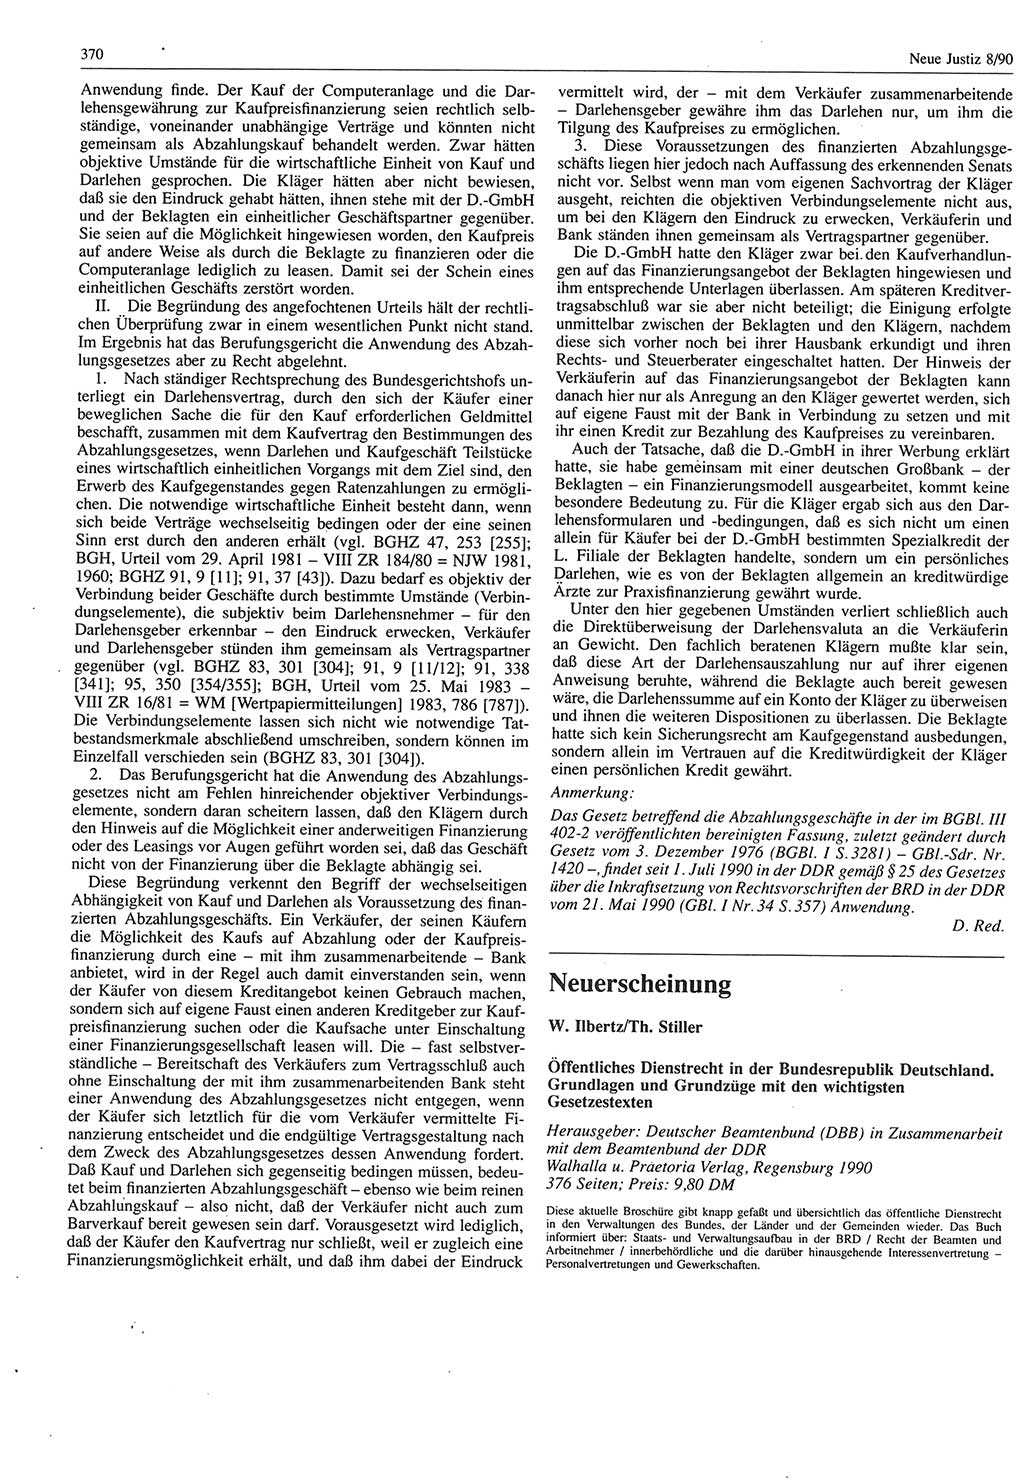 Neue Justiz (NJ), Zeitschrift für Rechtsetzung und Rechtsanwendung [Deutsche Demokratische Republik (DDR)], 44. Jahrgang 1990, Seite 370 (NJ DDR 1990, S. 370)